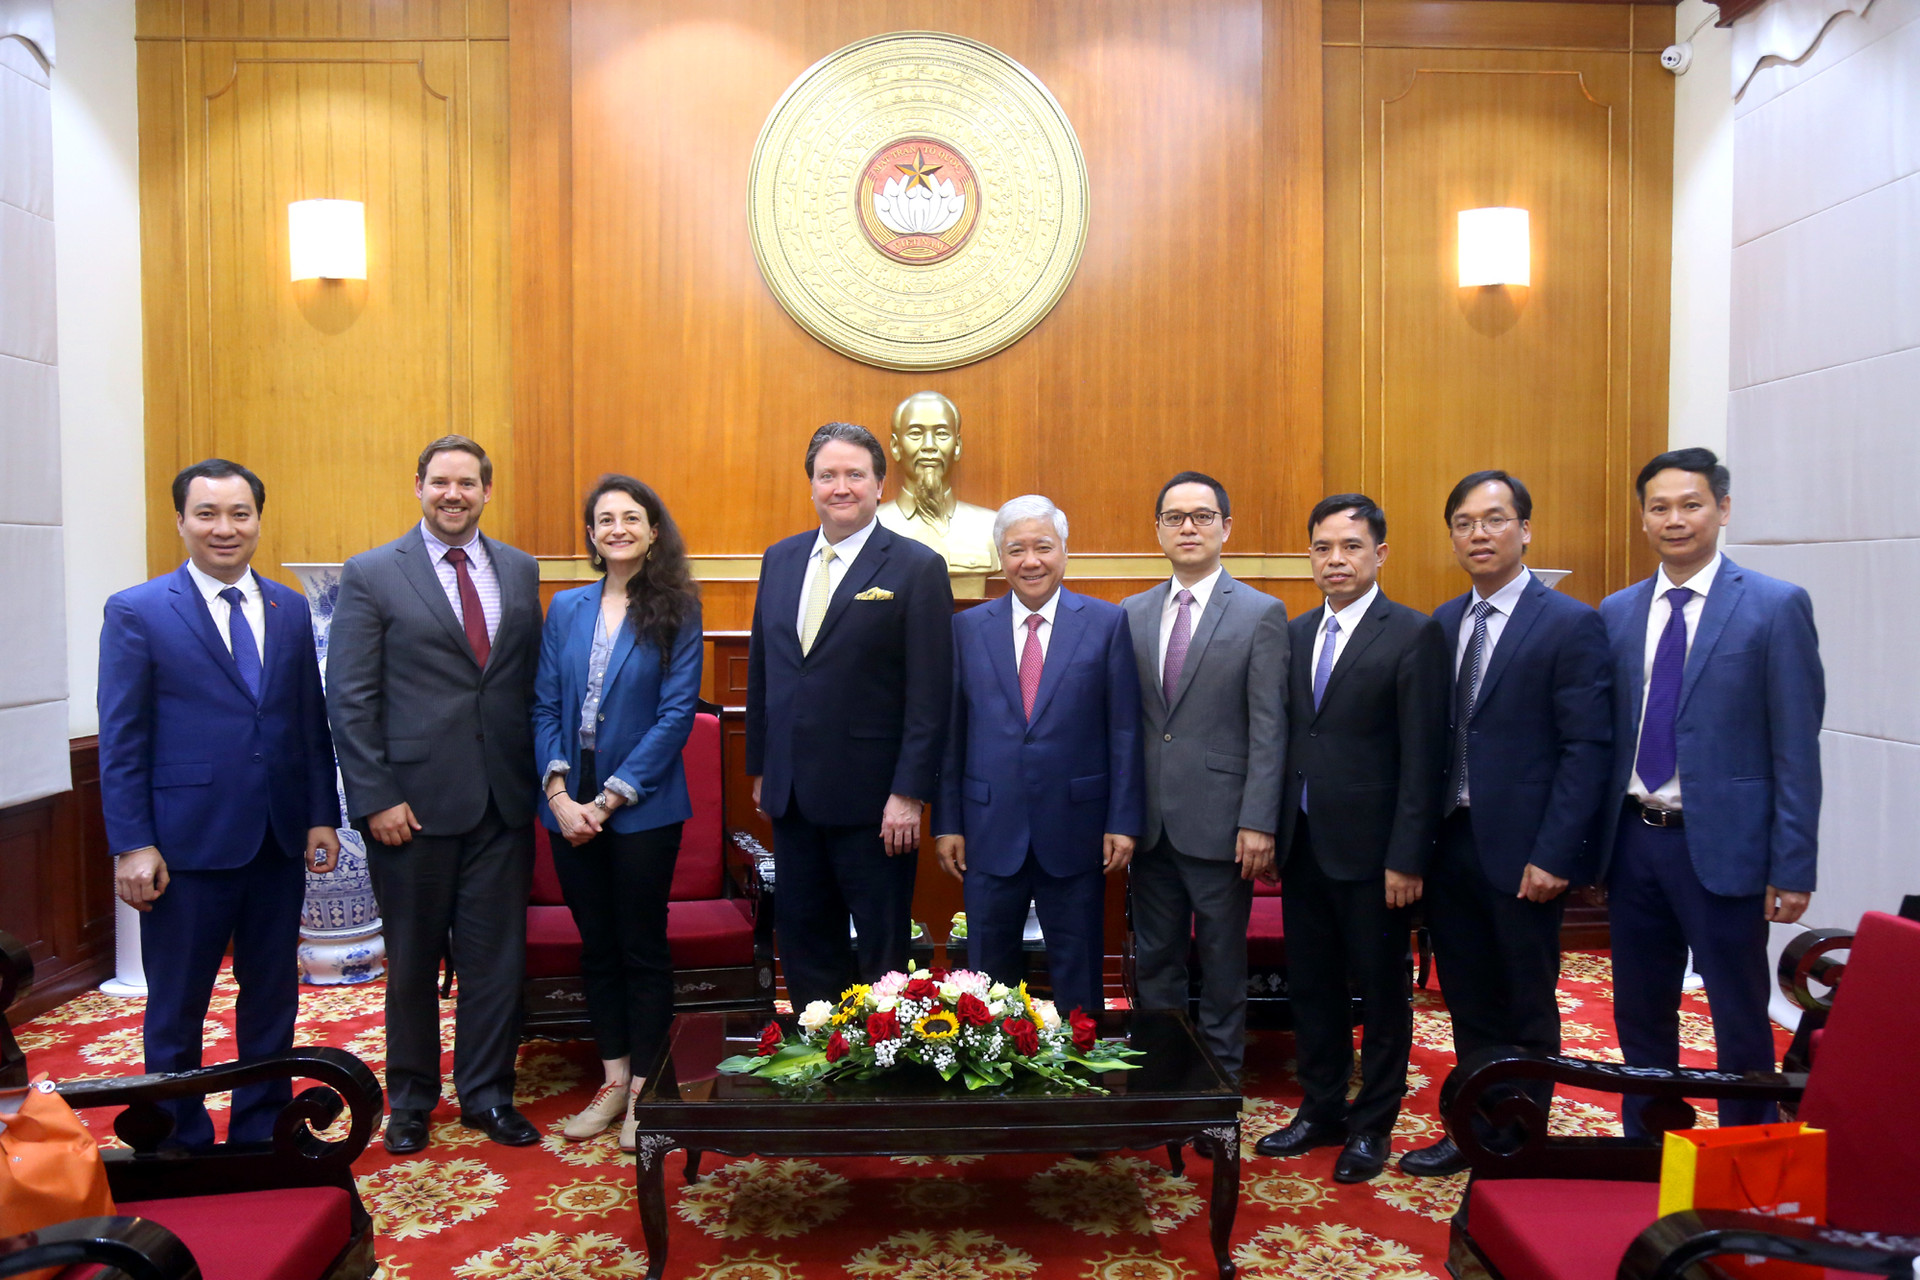 Chủ tịch Đỗ Văn Chiến chụp ảnh lưu niệm cùng ngài Đại sứ và các thành viên trong đoàn.